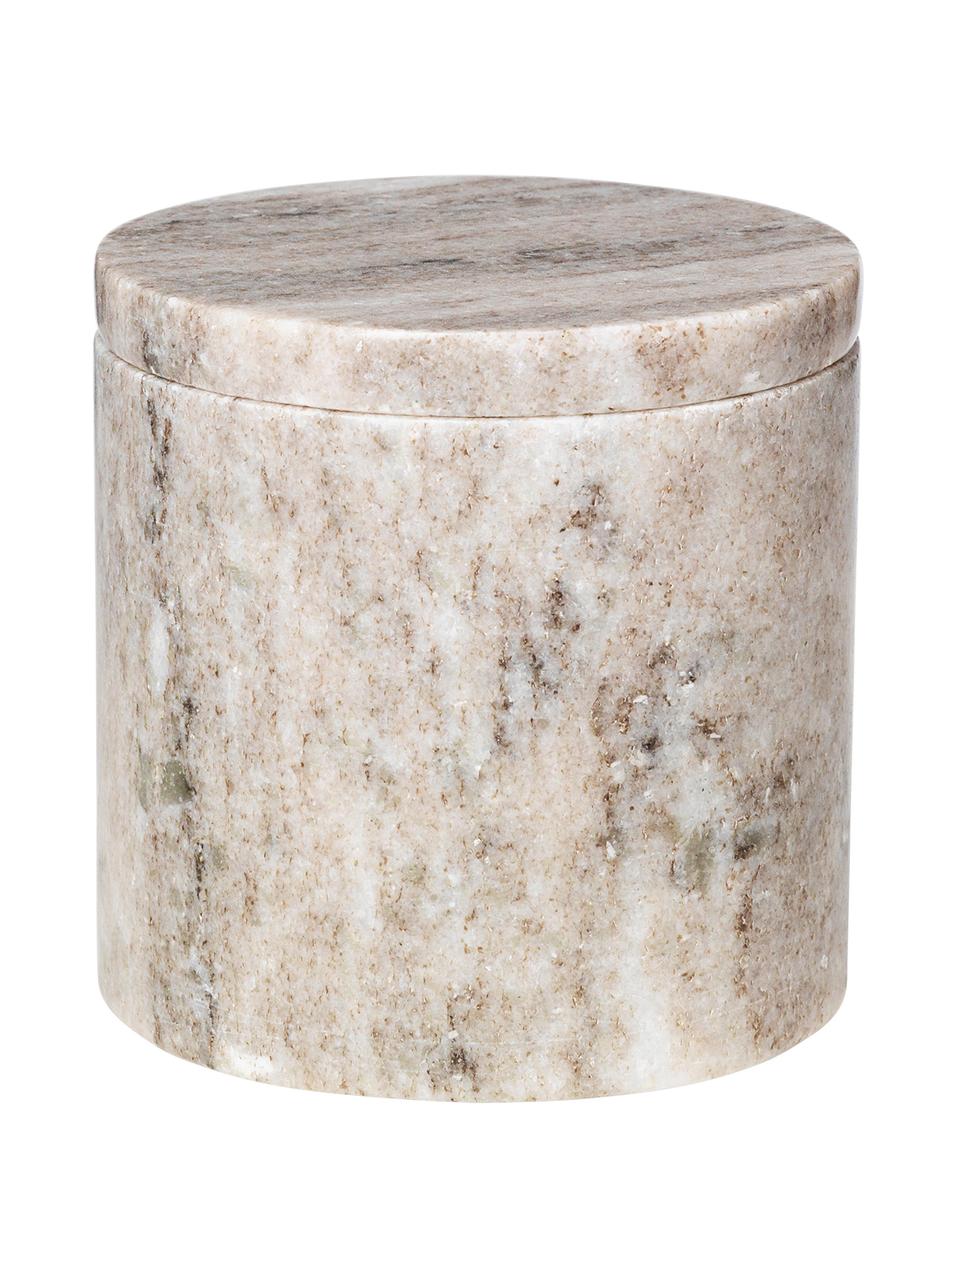 Pojemnik do przechowywania z marmuru Osvald, Marmur

Marmur jest materiałem pochodzenia naturalnego, dlatego produkt może nieznacznie różnić się kolorem i kształtem od przedstawionego na zdjęciu, Beżowy marmur, Ø 10 x W 10 cm